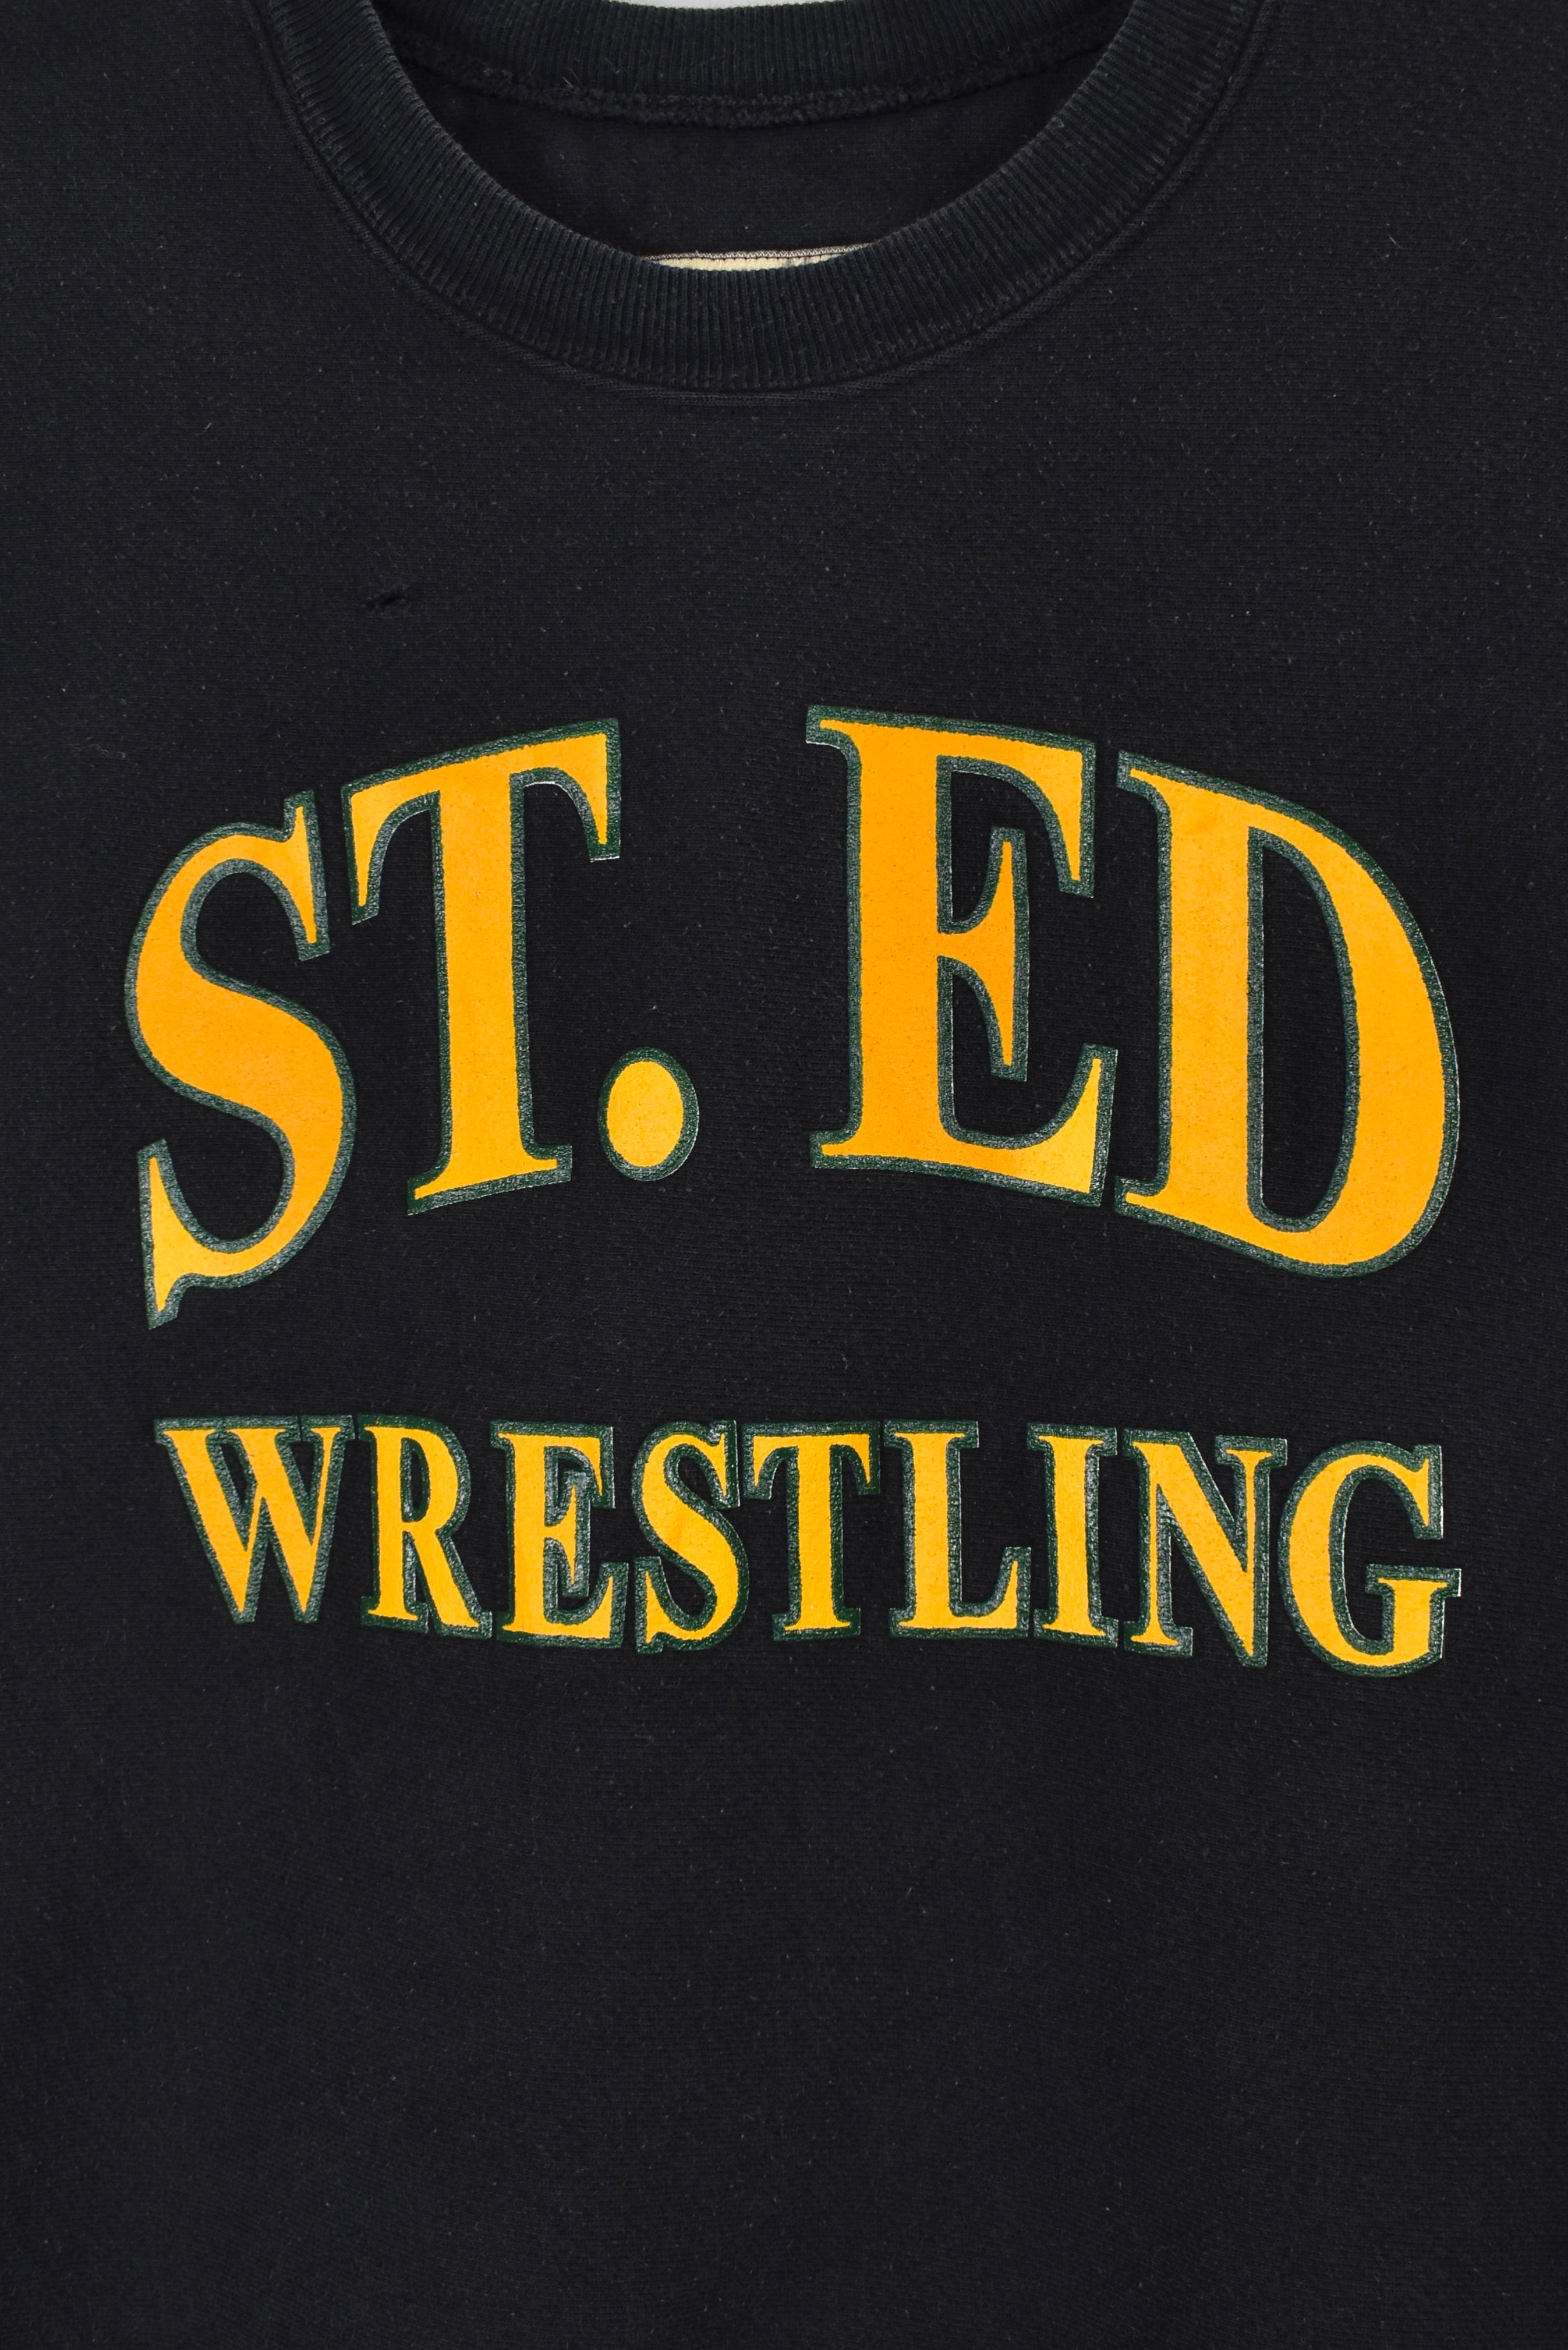 Vintage St Edward wrestling sweatshirt Large, college black crewneck